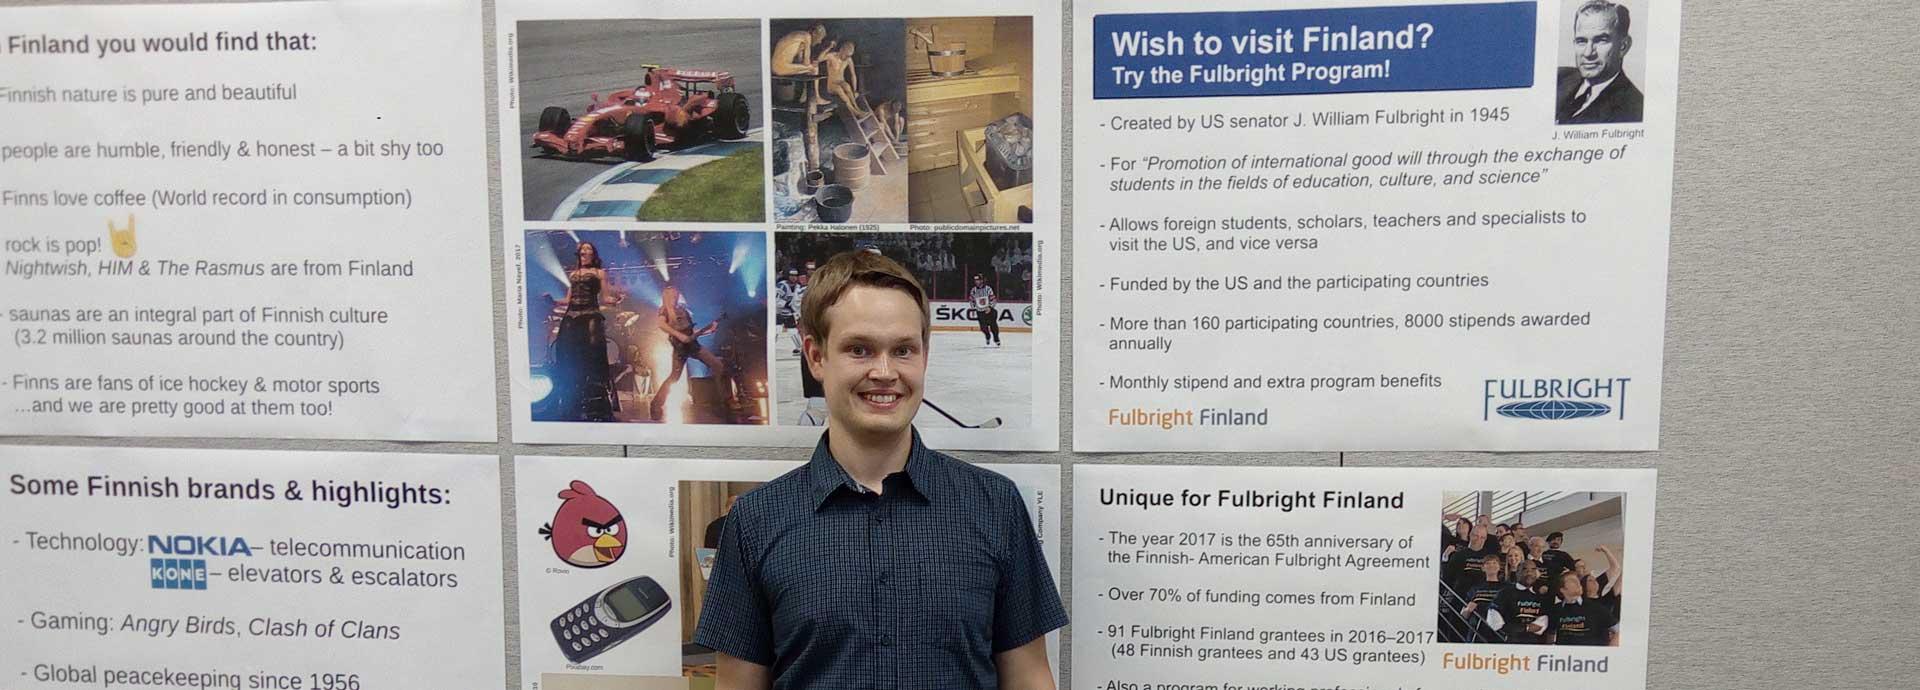 Fulbright Finland grantee Lauri Kivijärvi in front of posters about Finland and Fulbright Finland Foundation